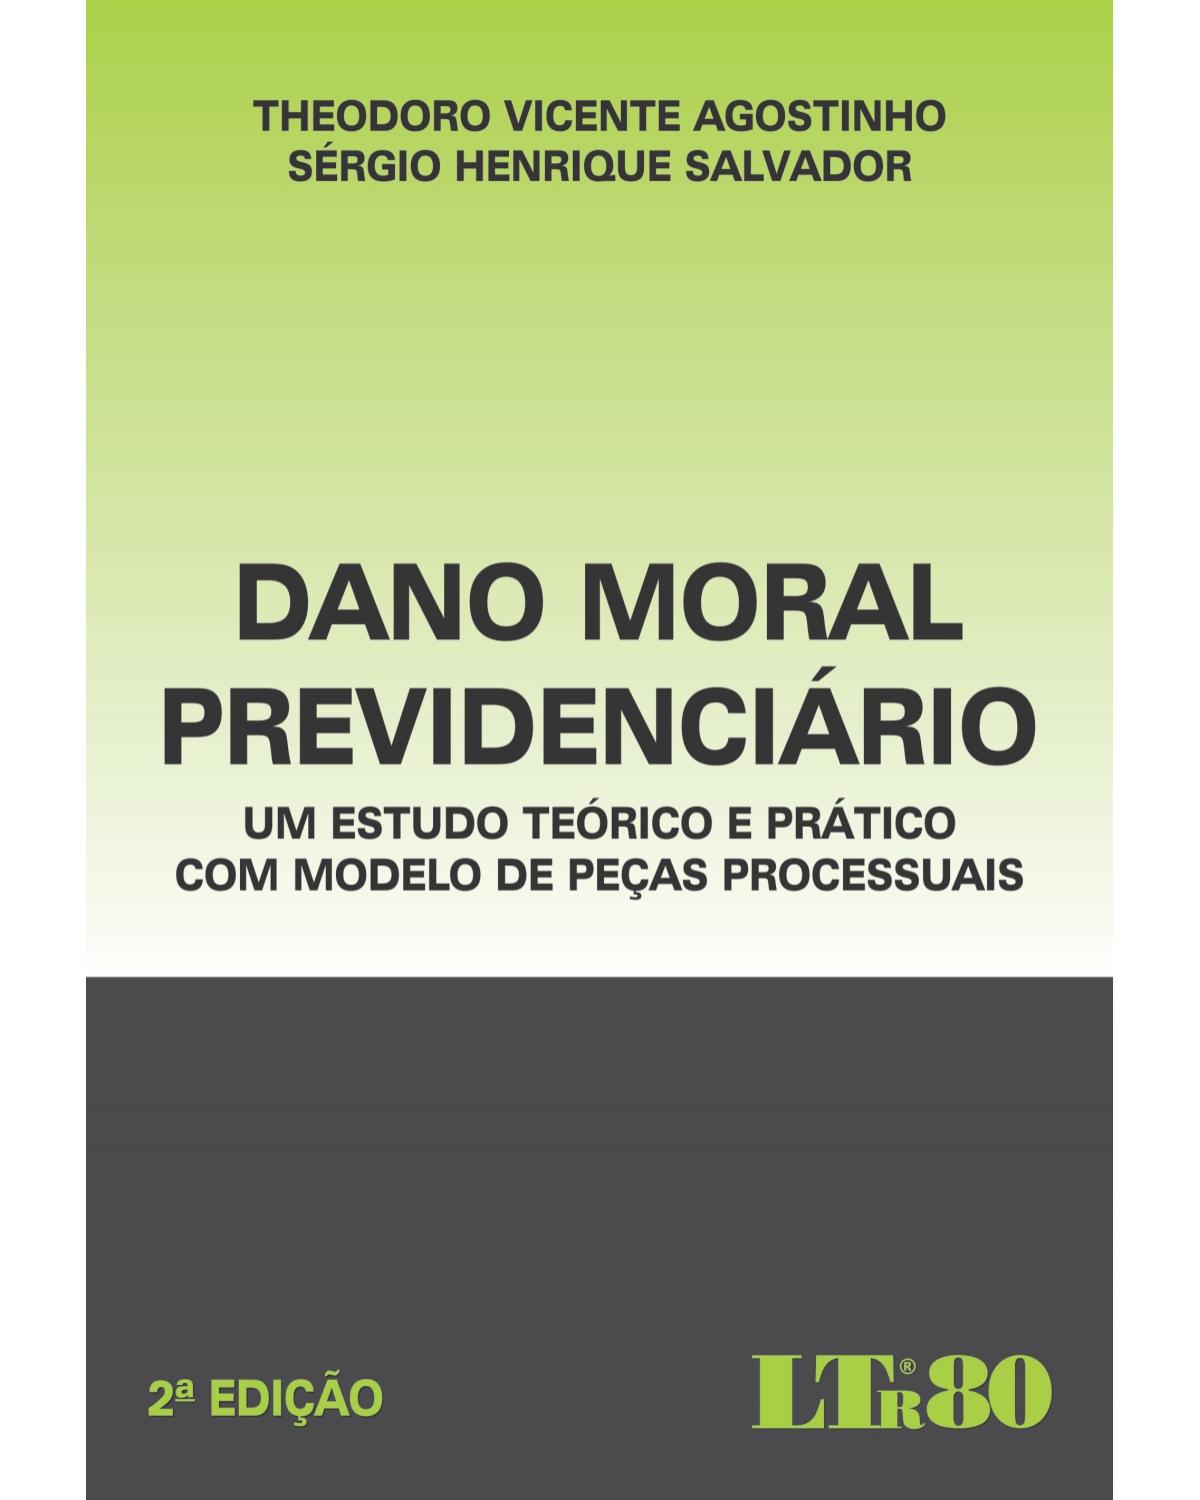 Dano moral previdenciário: Um estudo teórico e prático com modelo de peças processuais - 2ª Edição